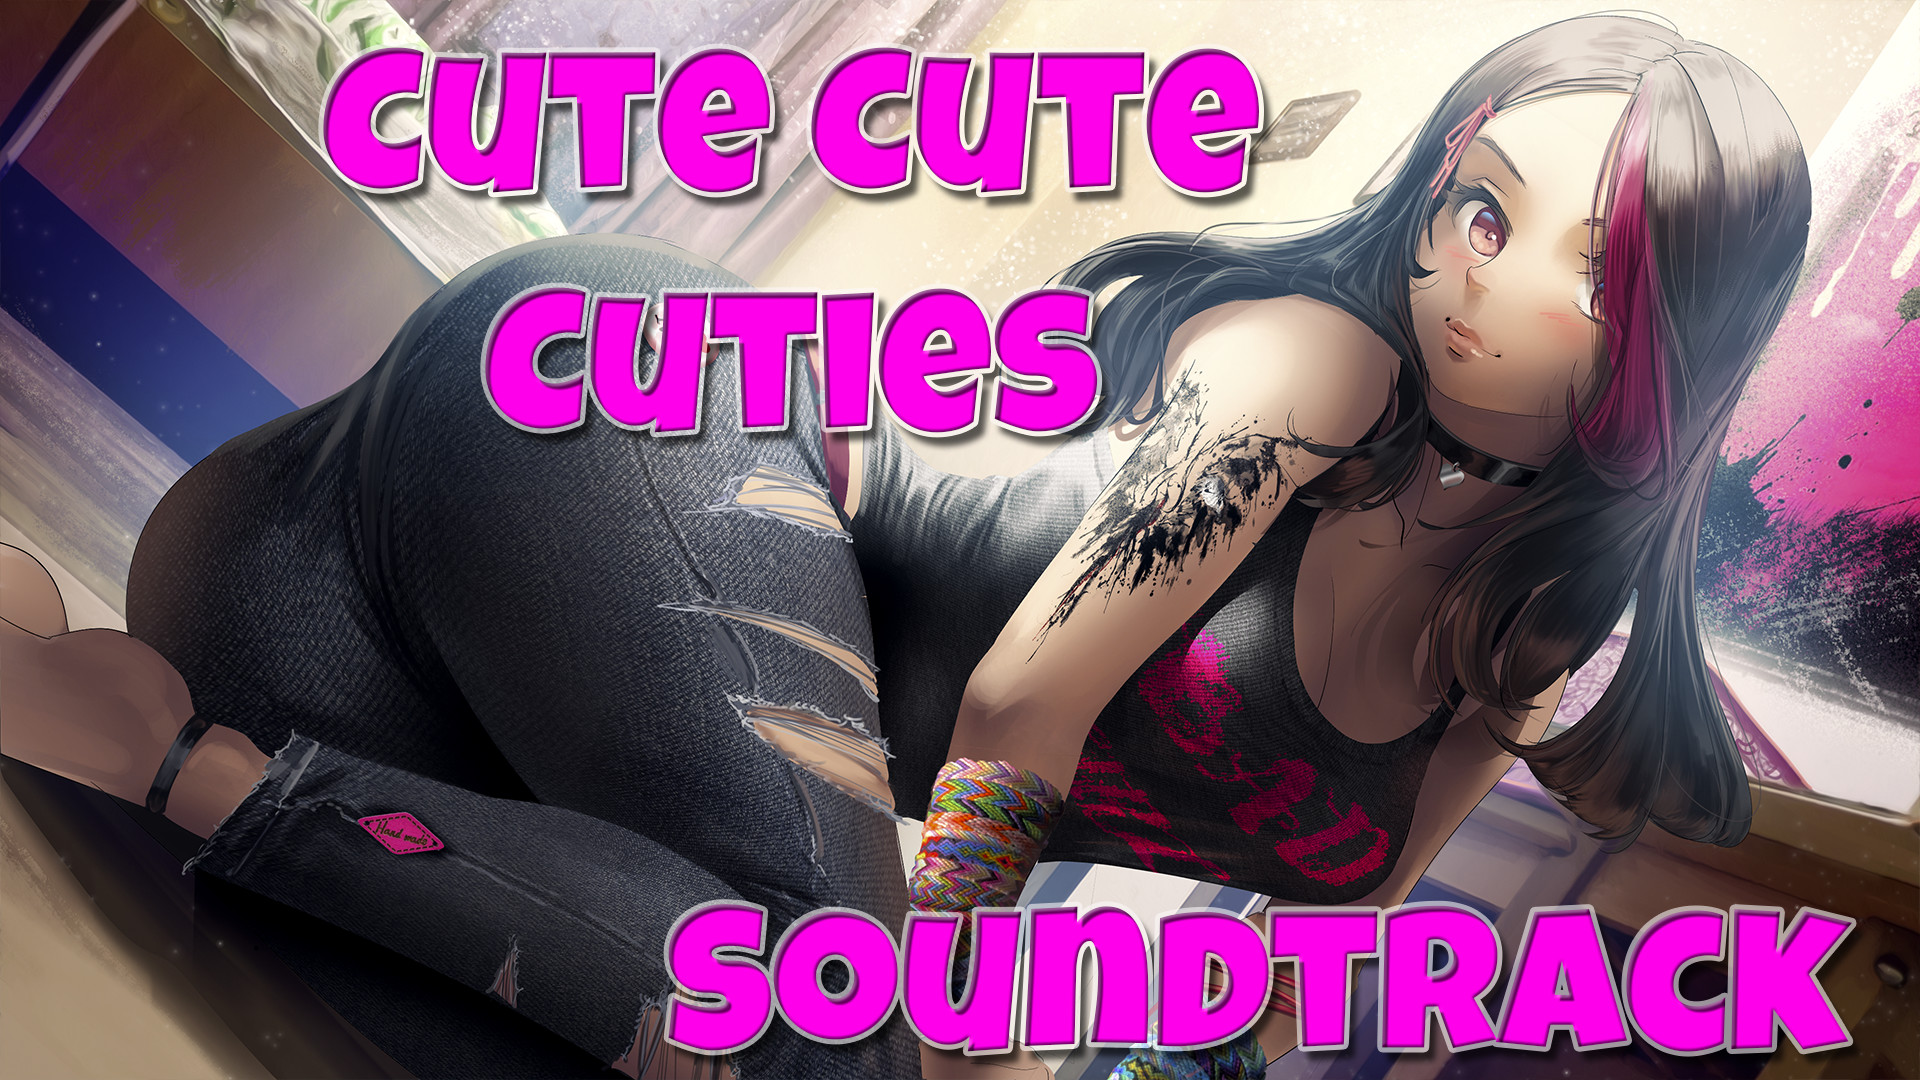 Cute Cute Cuties - Soundtrack Featured Screenshot #1